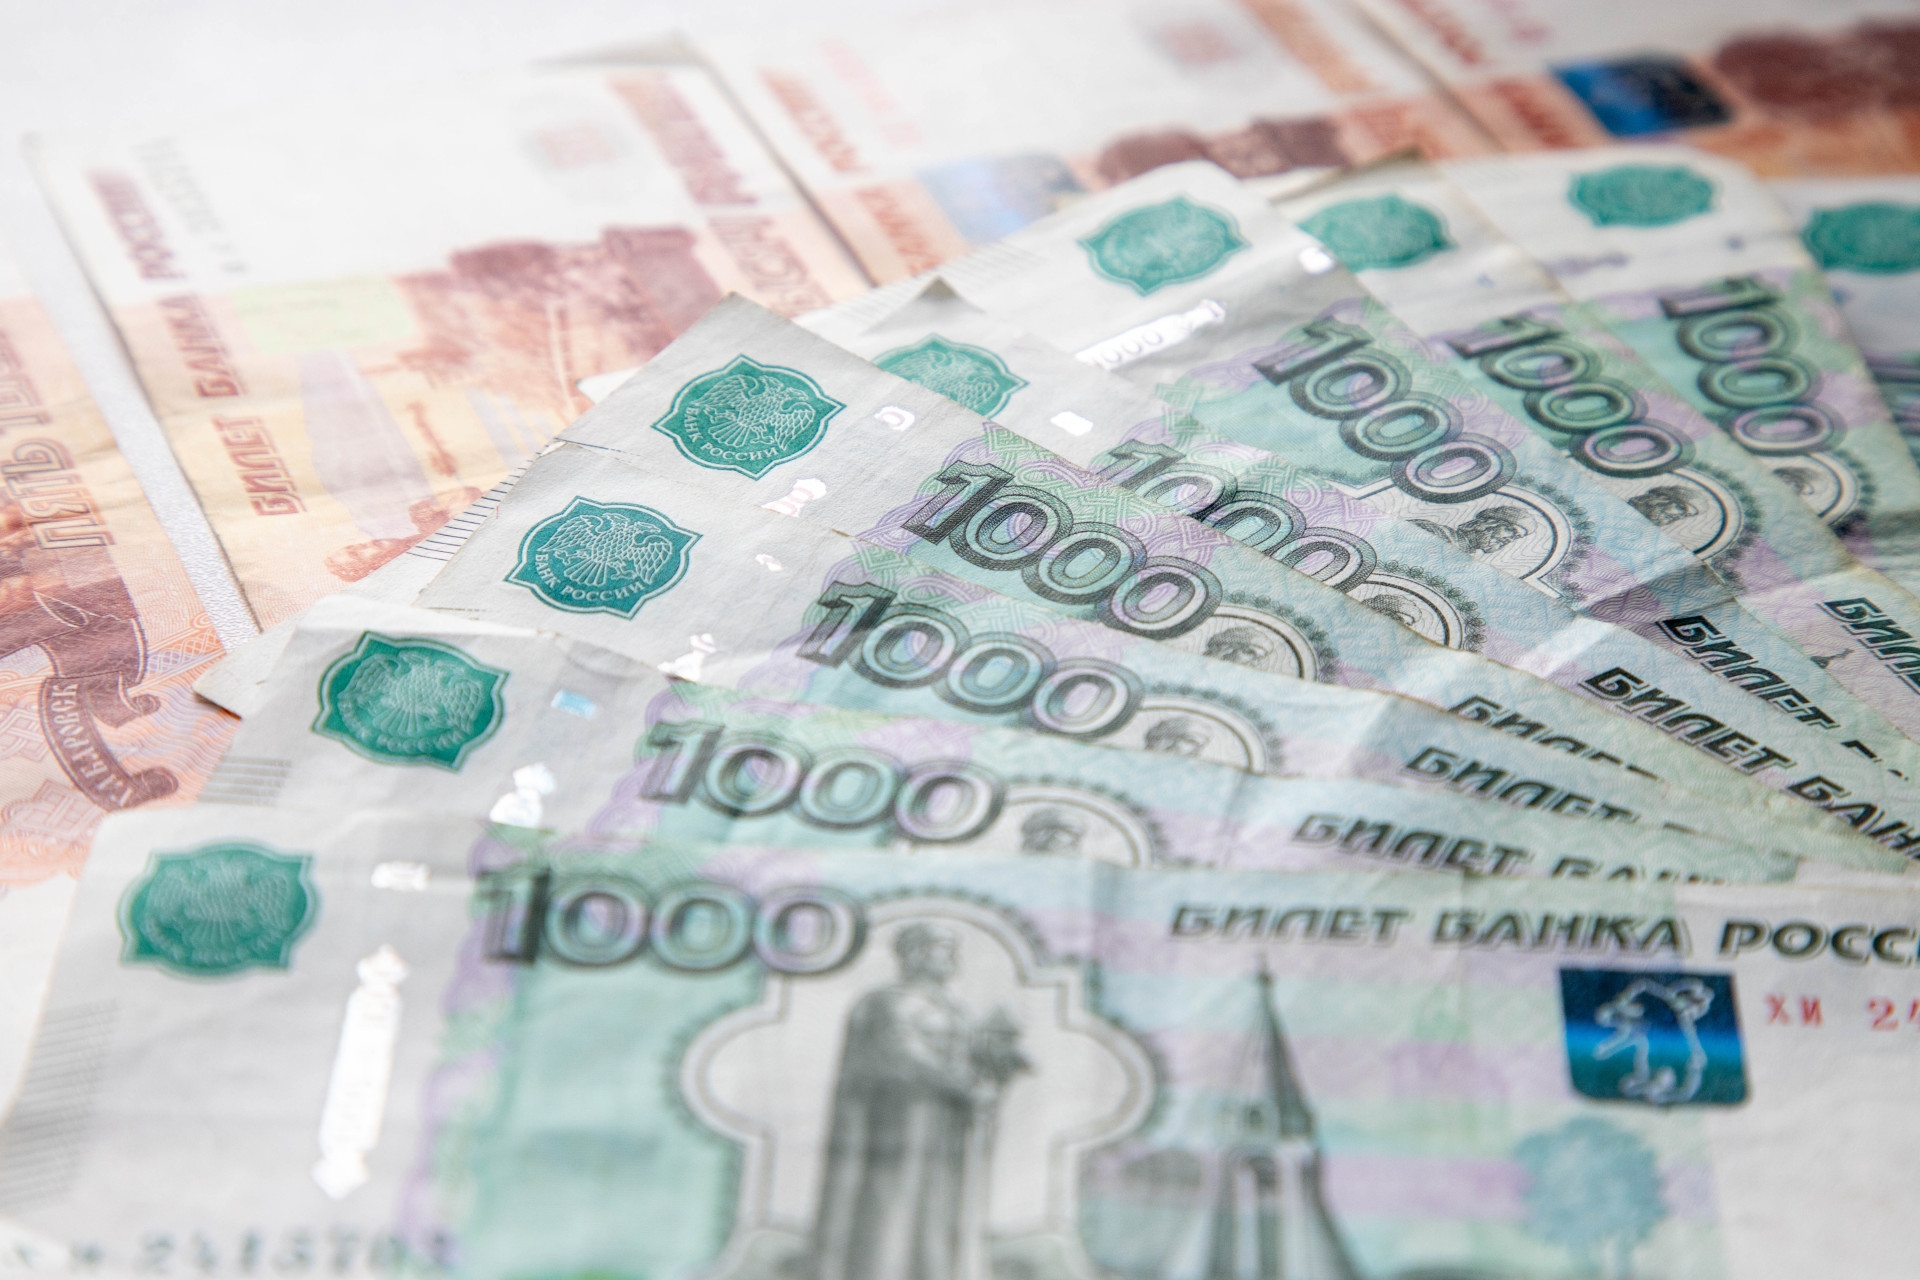 Тульская область заняла 40-е место в рейтинге регионов по уровню зарплат в малых и средних населенных пунктах